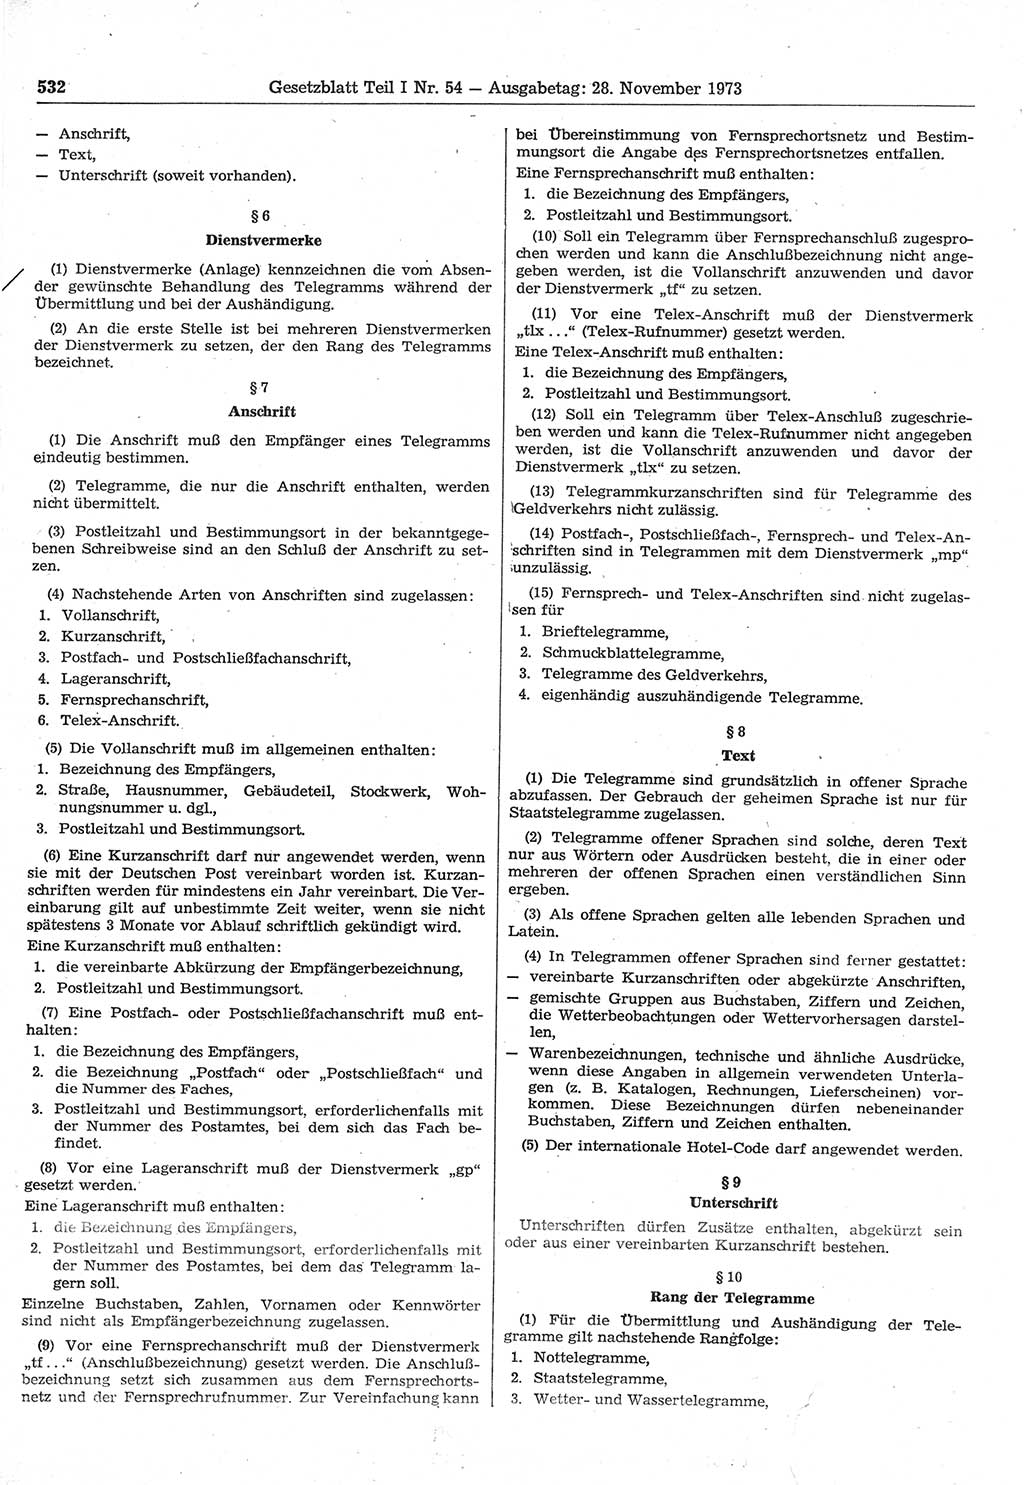 Gesetzblatt (GBl.) der Deutschen Demokratischen Republik (DDR) Teil Ⅰ 1973, Seite 532 (GBl. DDR Ⅰ 1973, S. 532)